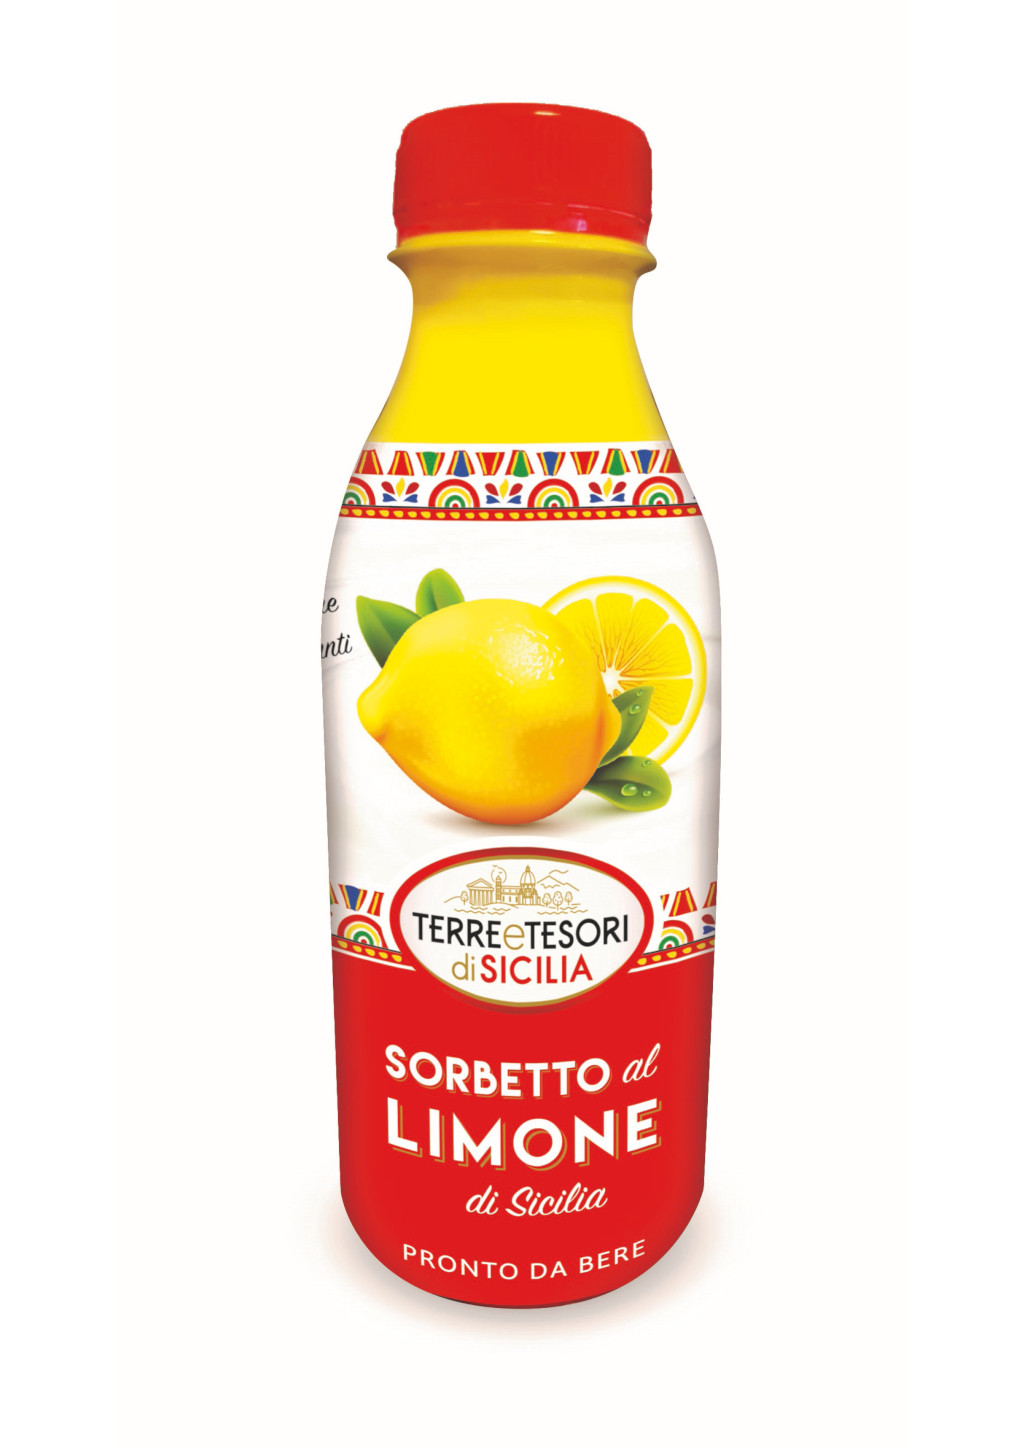 TERRE E TESORI DI SICILIA - Sorbetto al limone 500 g